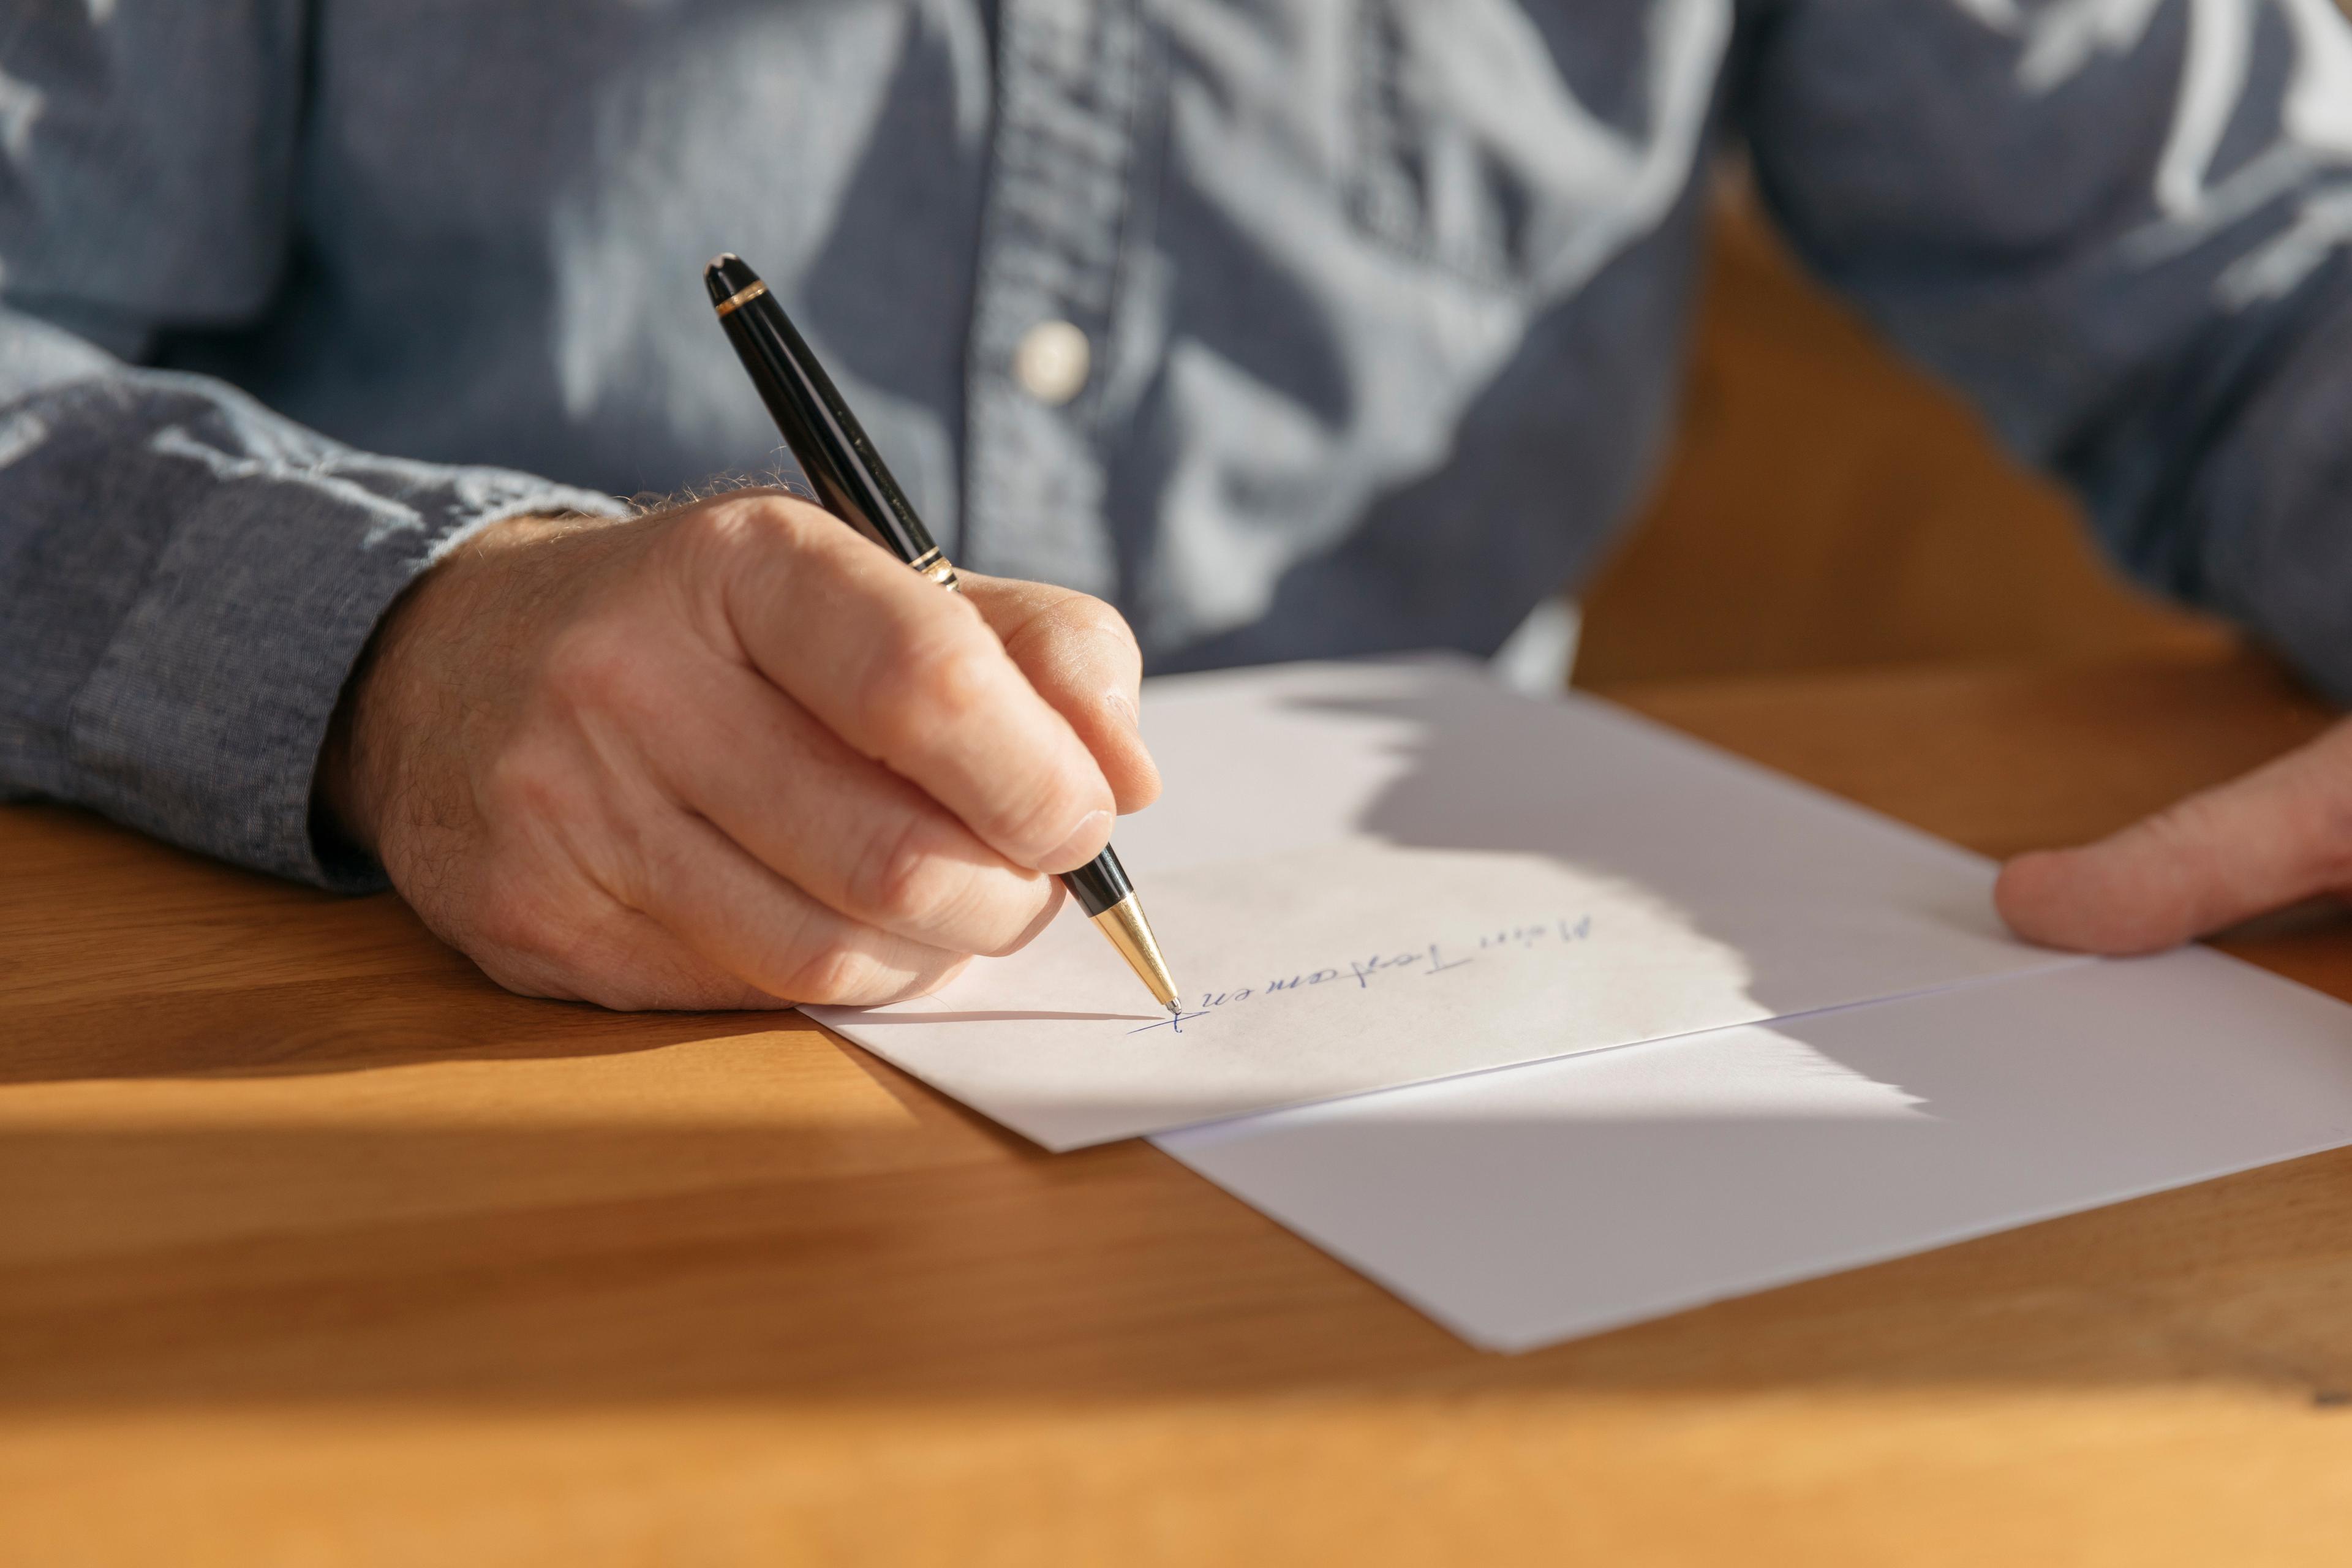 Une main avec un stylo à bille qui écrit "Mon testament" sur une feuille de papier.